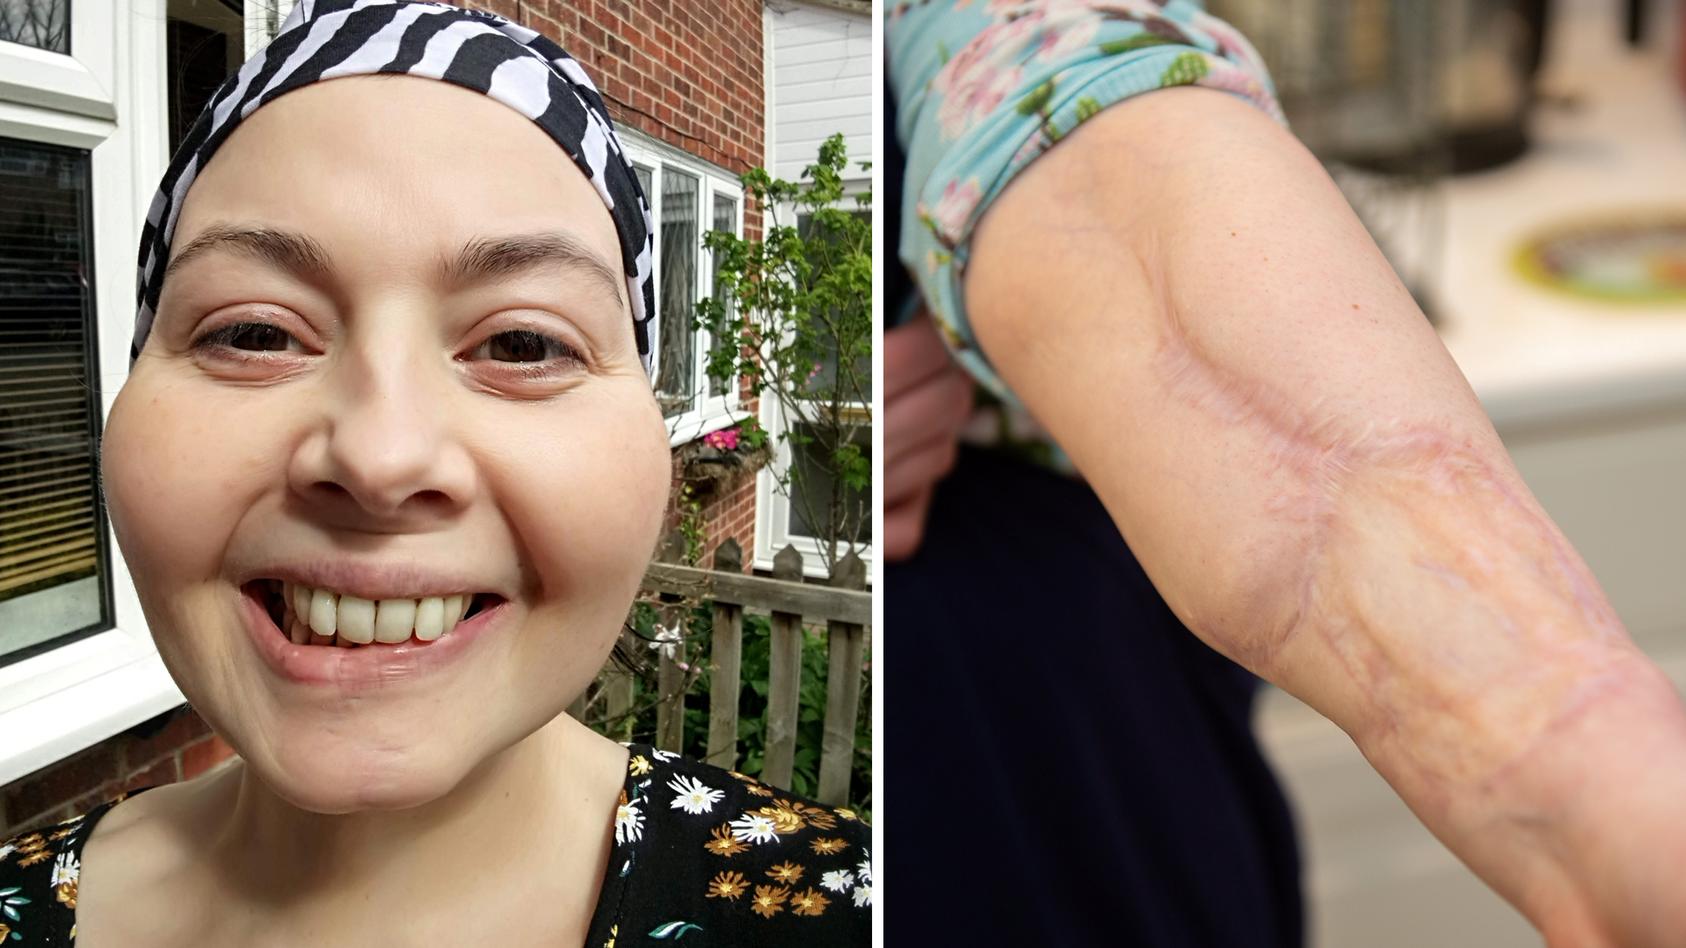 Krebspatientin Laura Marston wurde die Zunge entfernt. Trotzdem kann sie wieder schmecken.